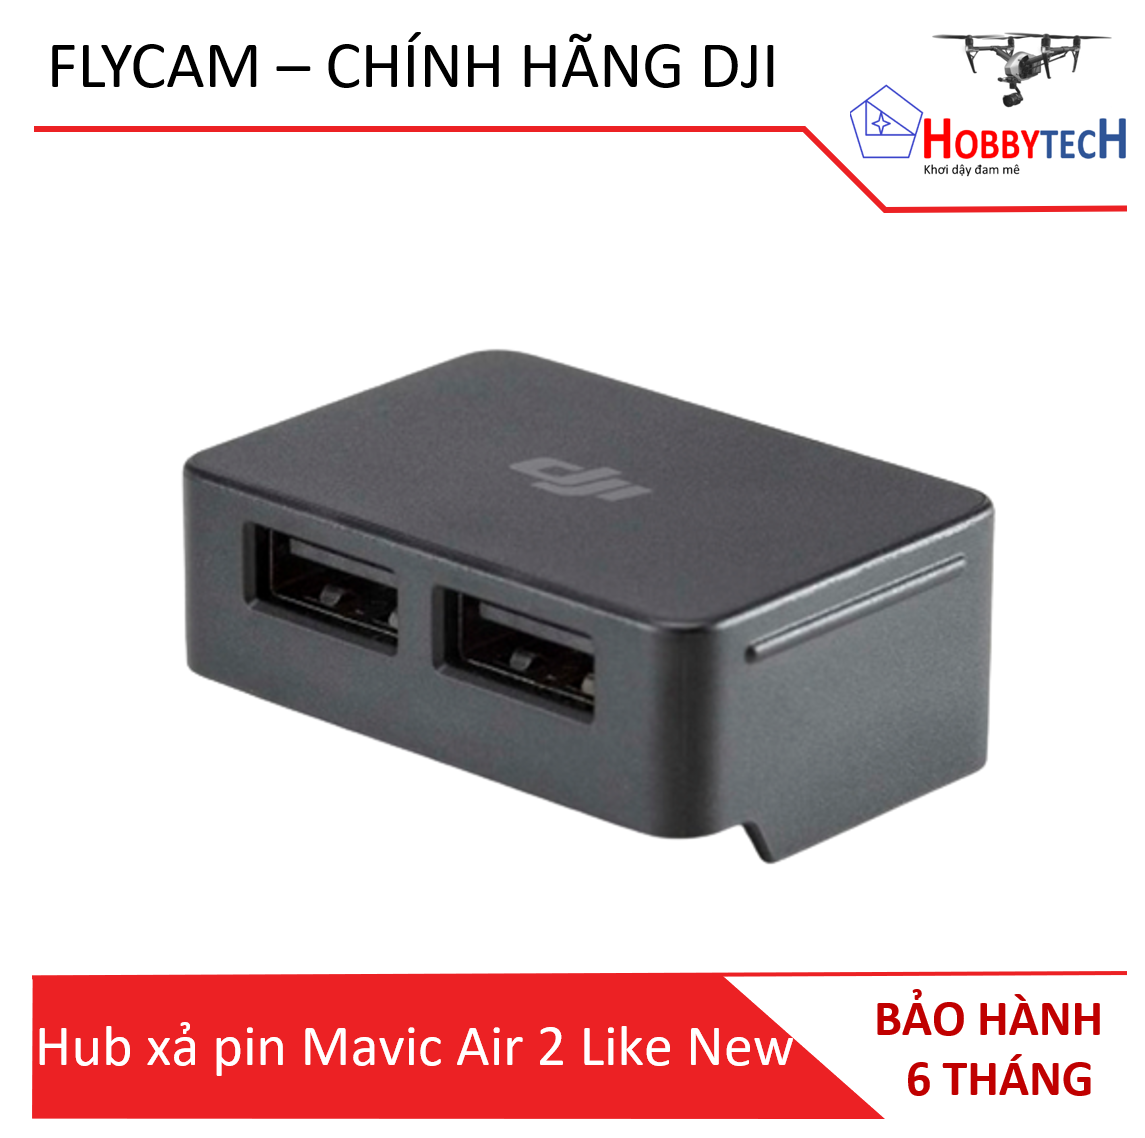 Hub xả pin Mavic Air 2 DJI like new